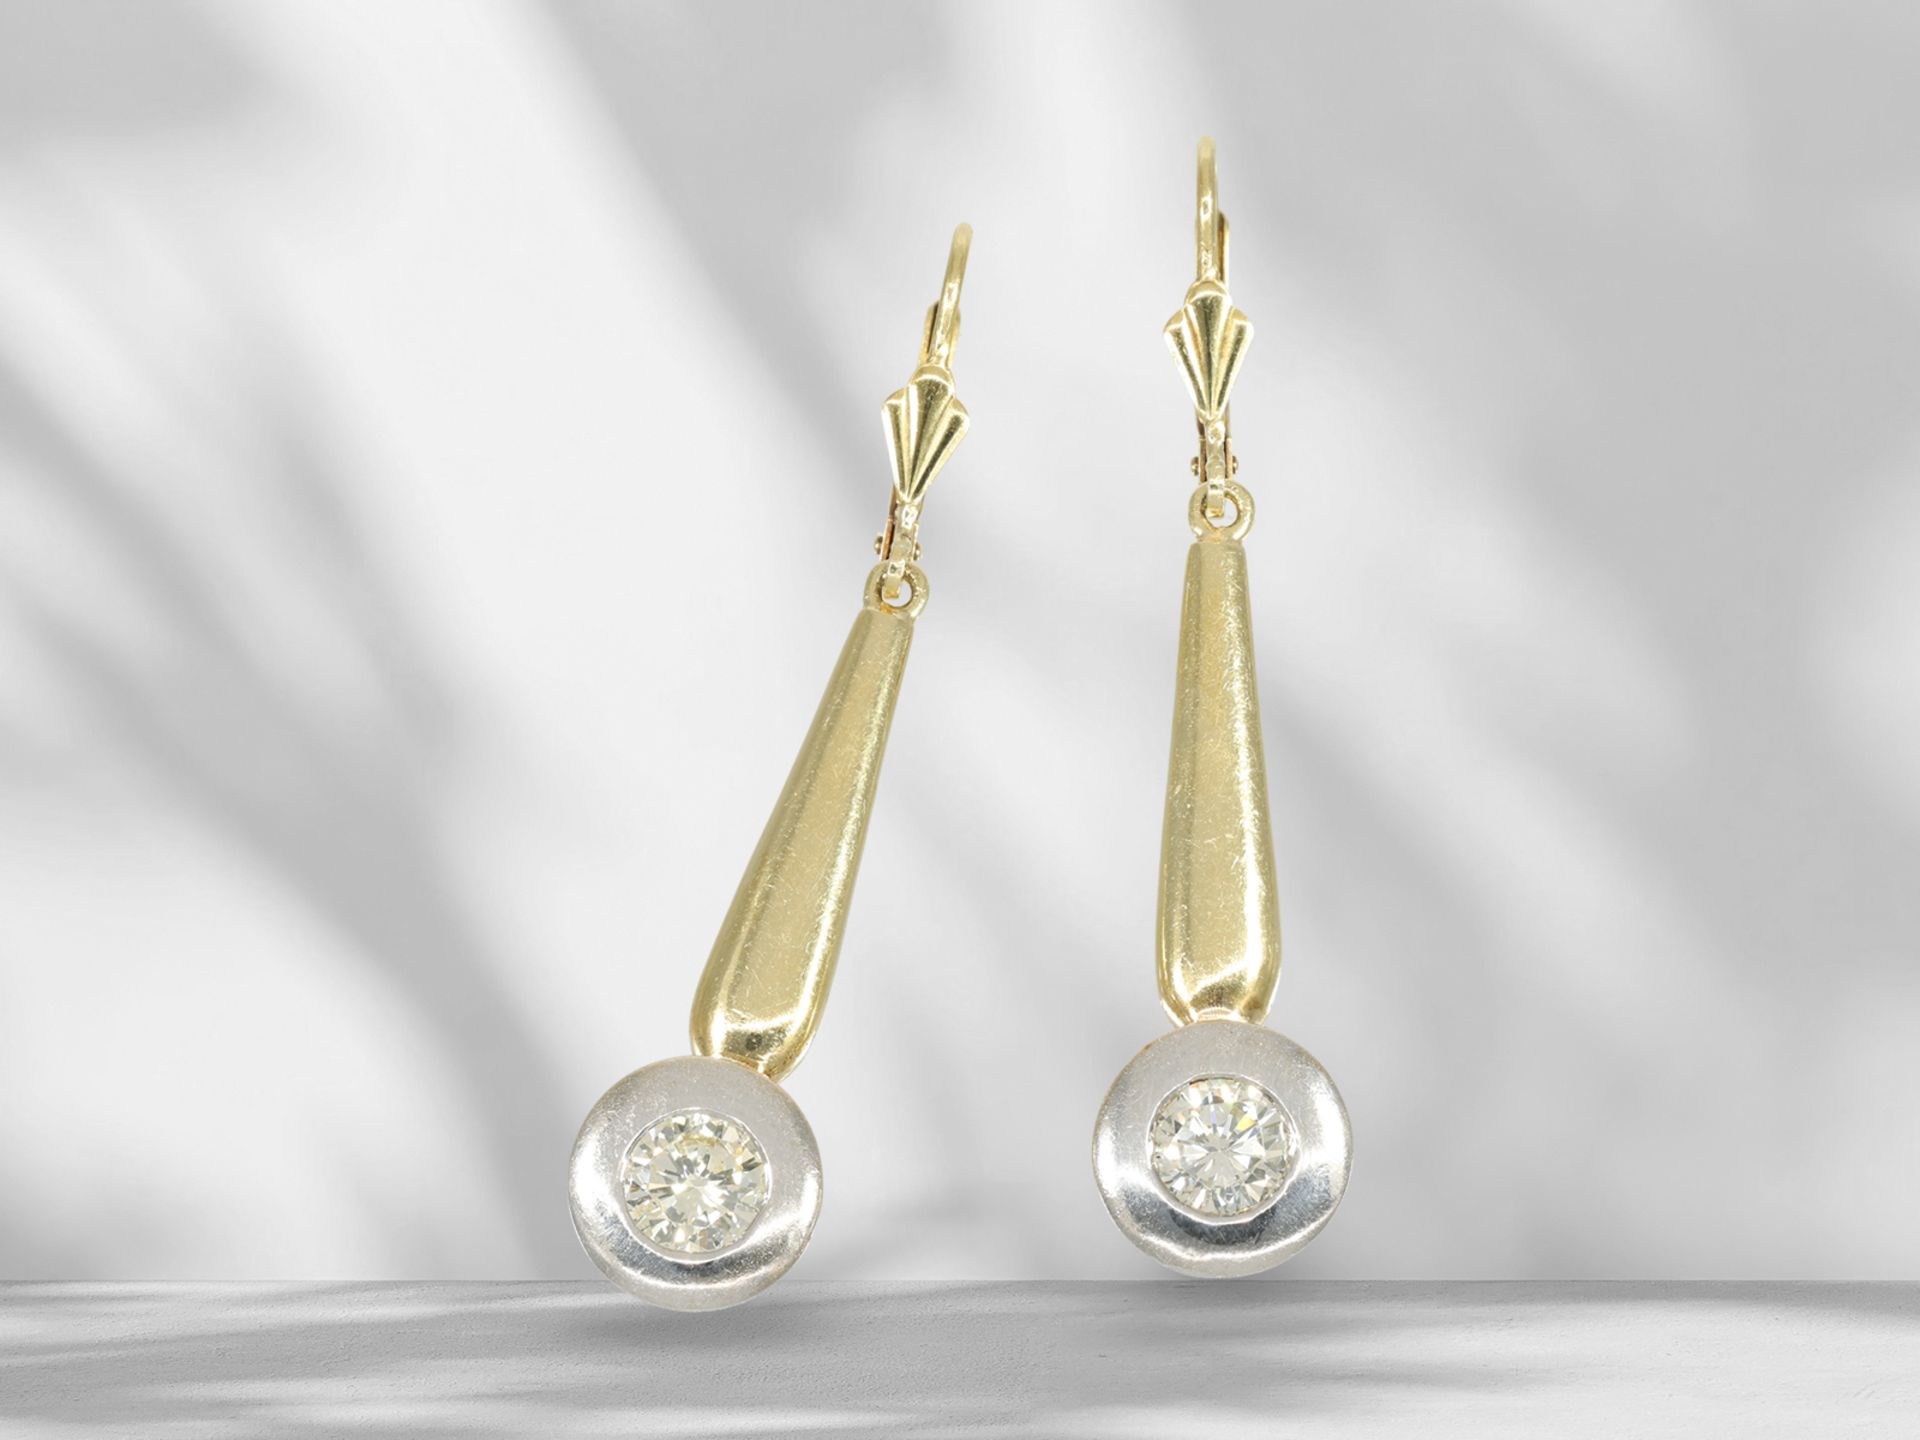 Decorative brilliant-cut diamond solitaire earrings with 2 half-carat diamonds